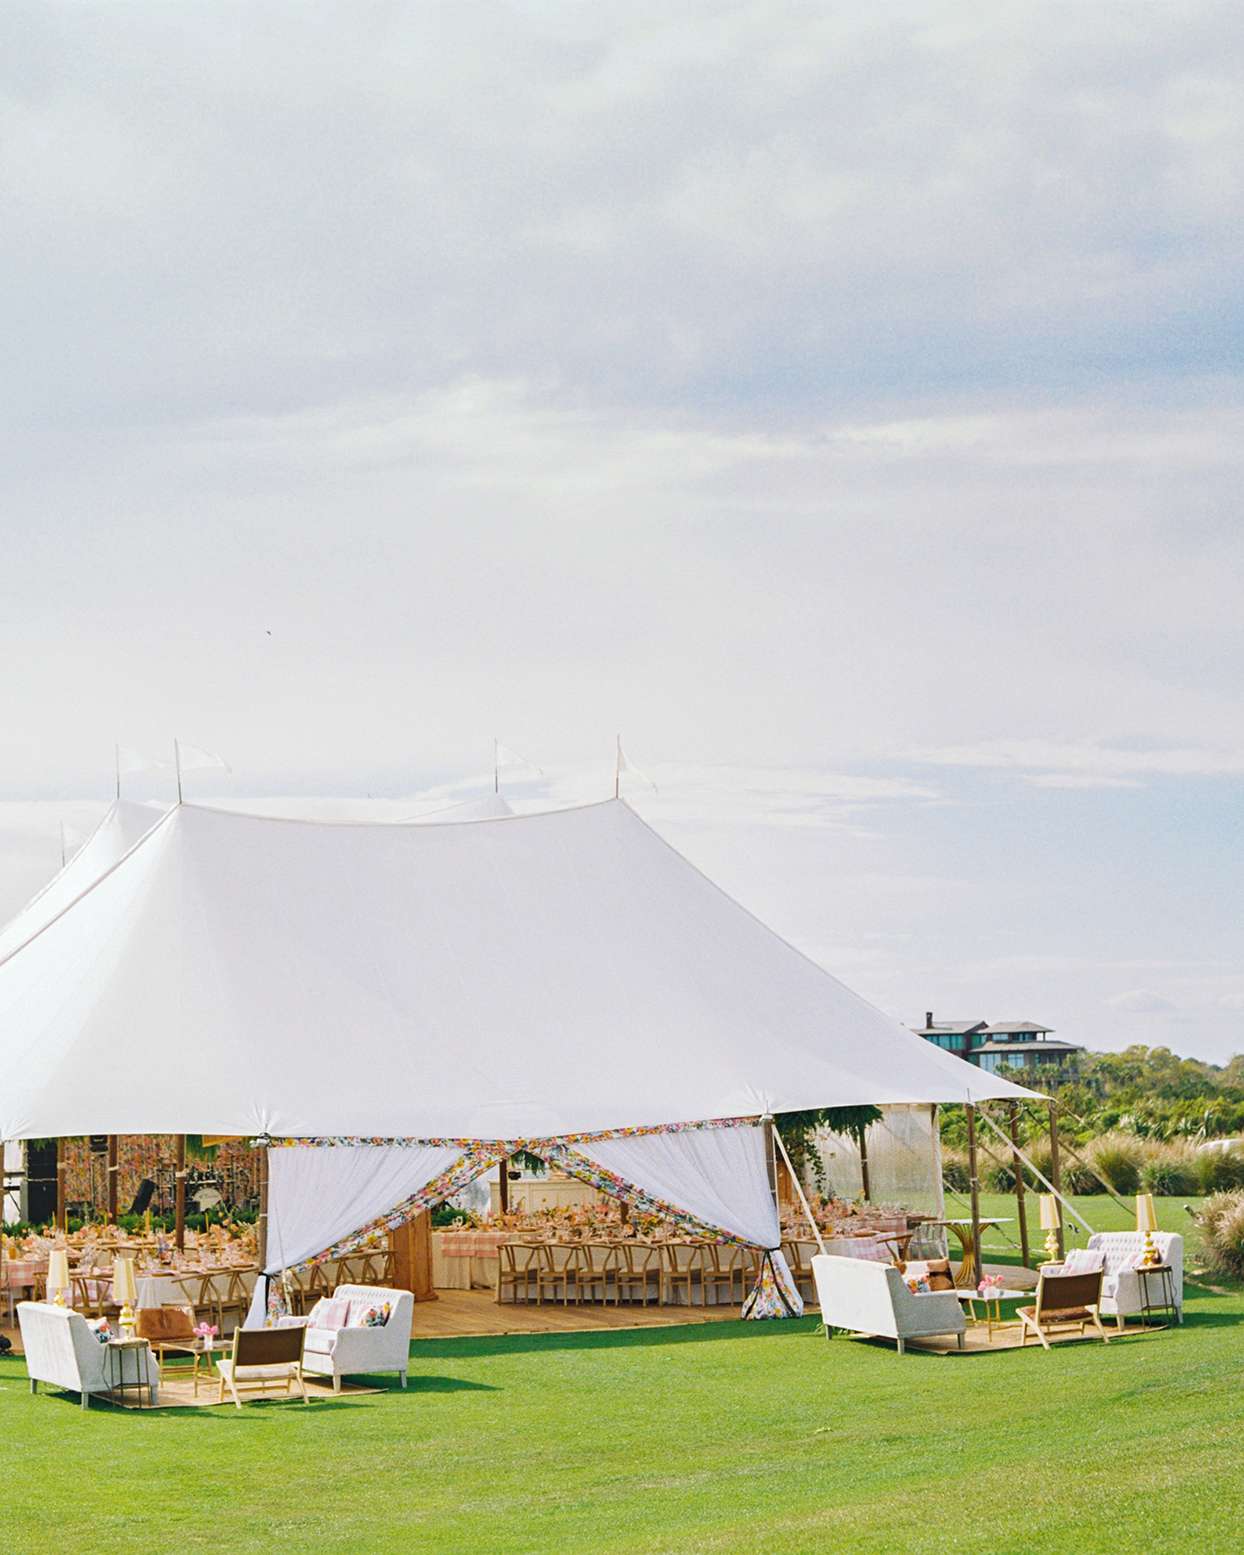 lauren dan wedding tent with wooden floor and reception tables